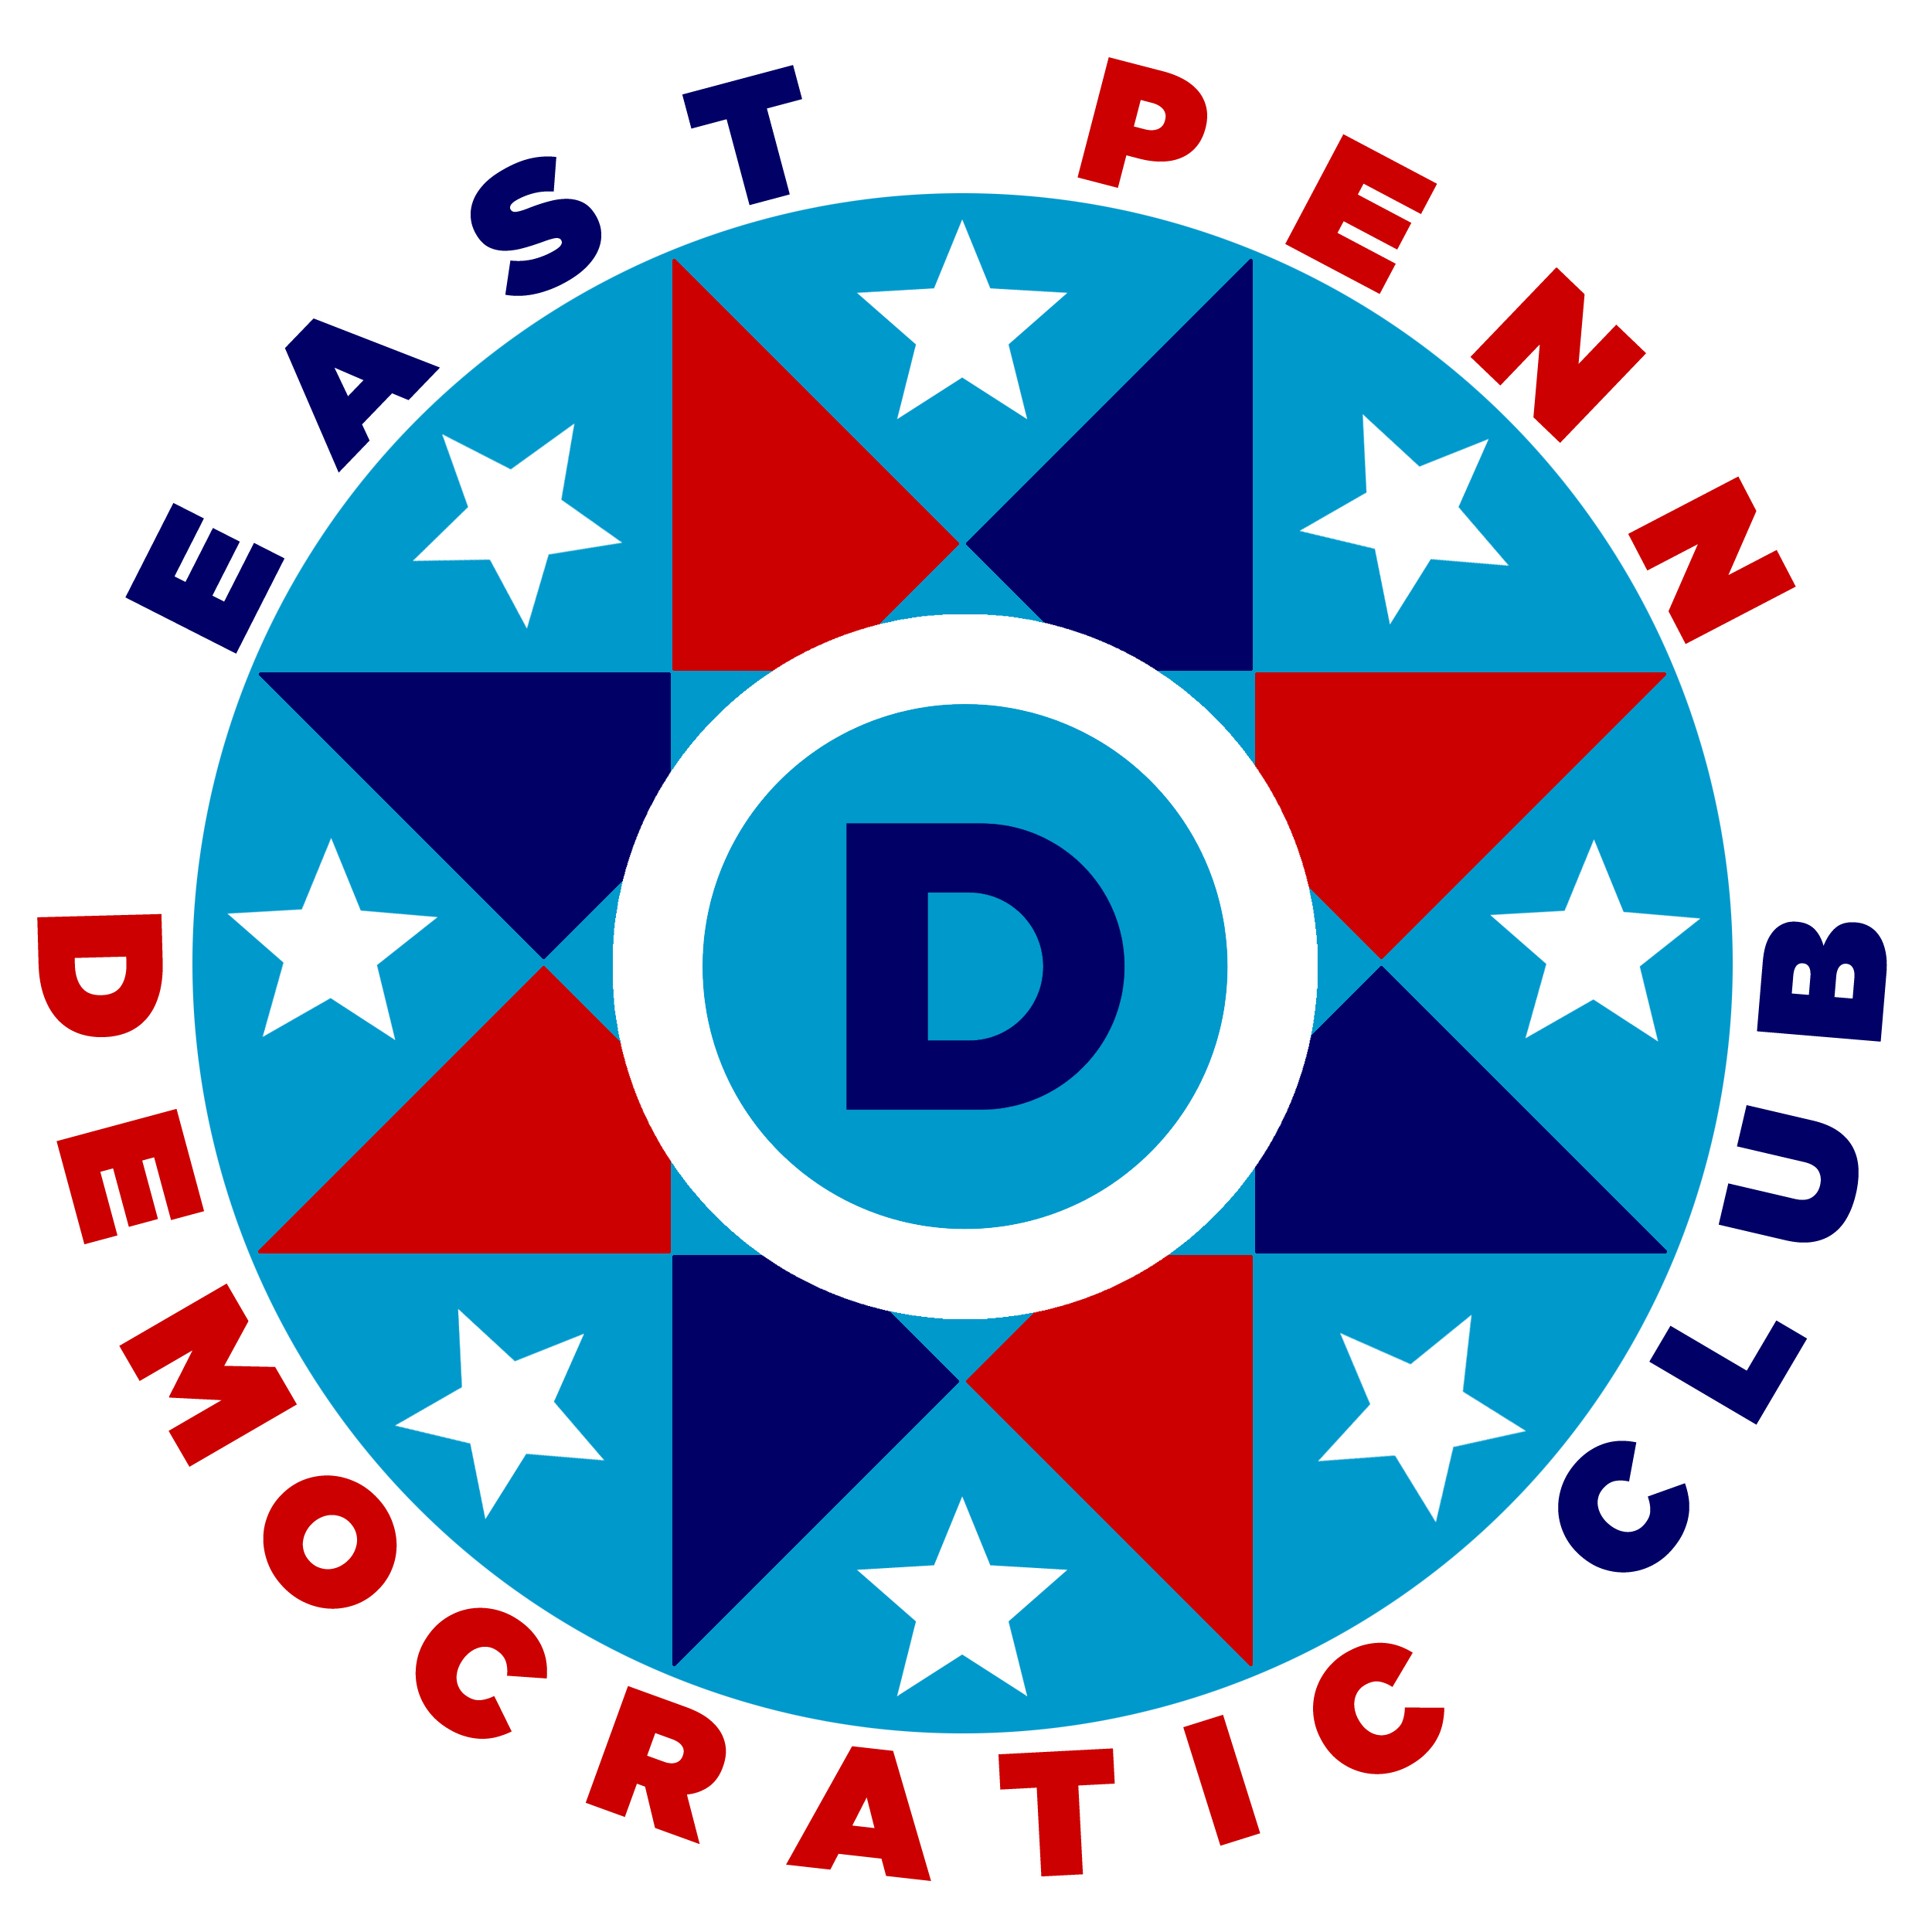 East Penn Democratic Club